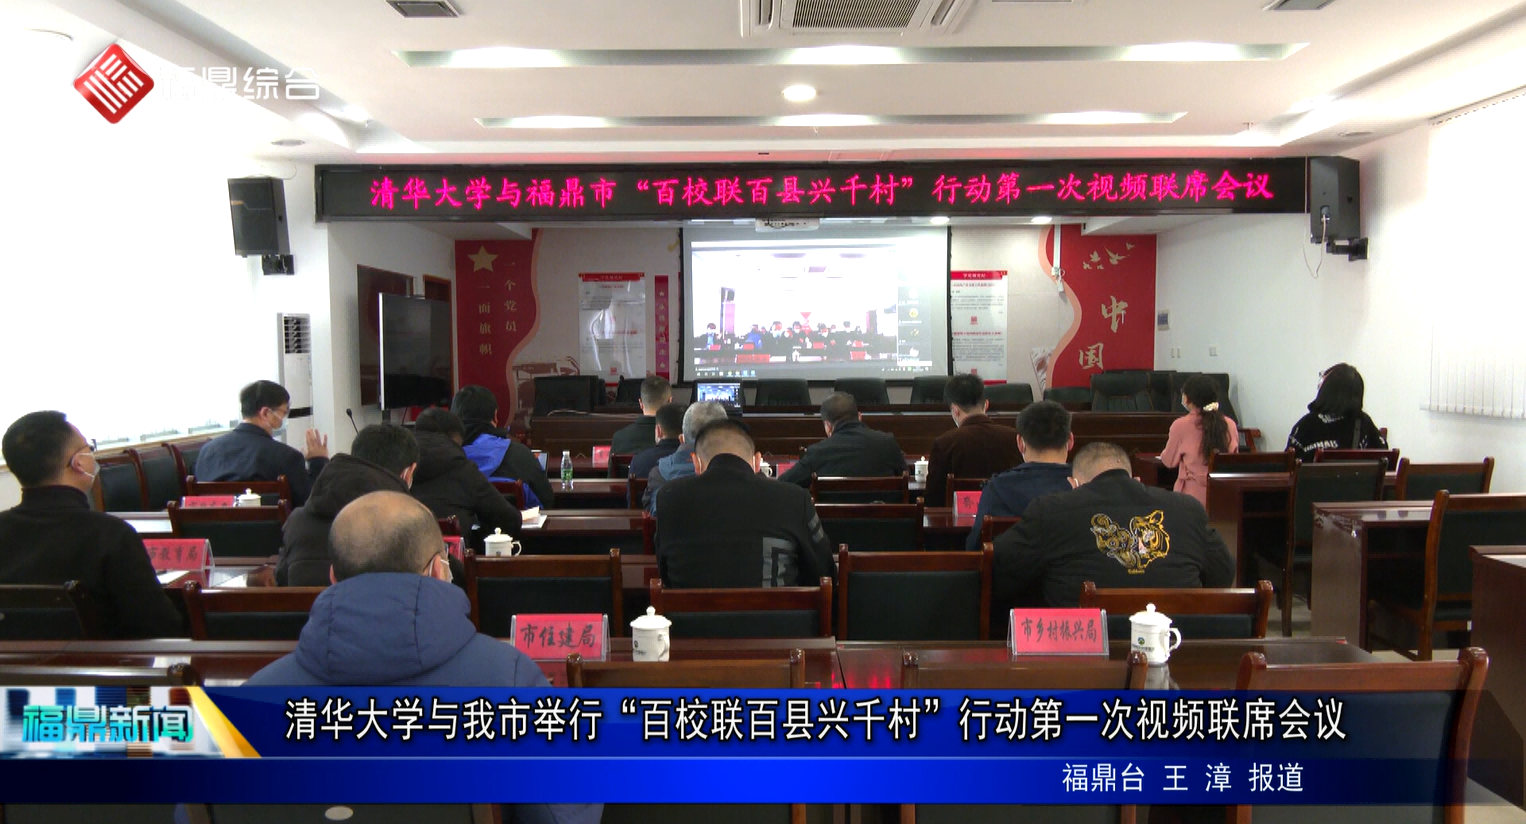 清华大学与我市举行“百校联百县兴千村”行动第一次视频联席会议